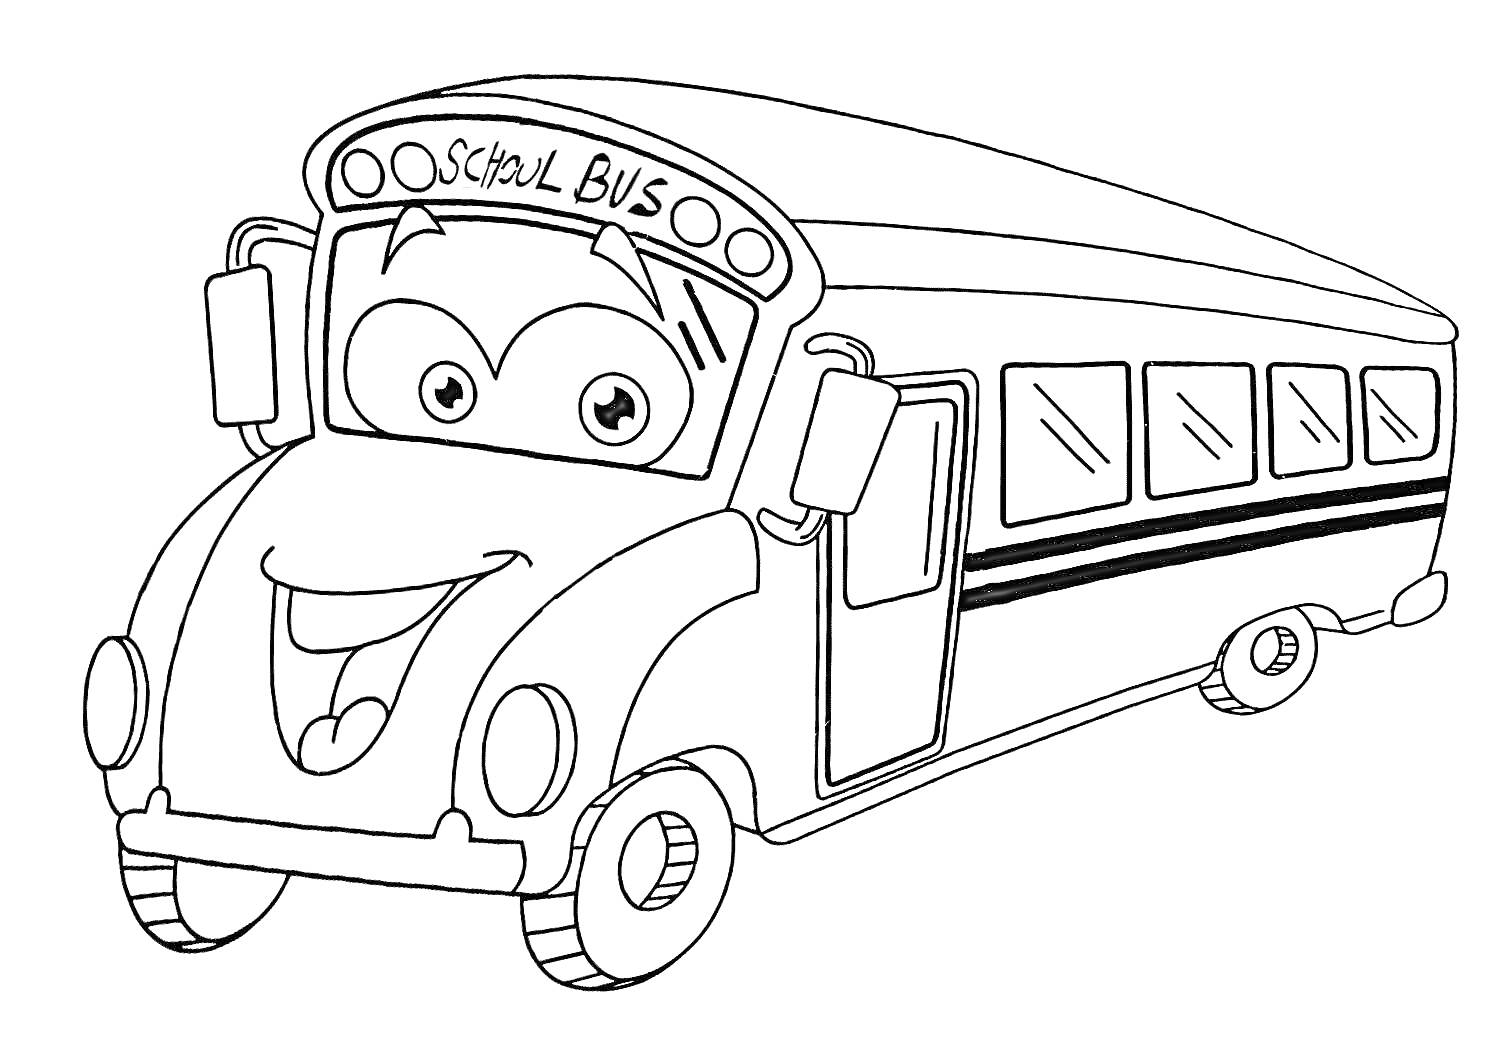 Школьный автобус Тайо с улыбкой, окнами и надписью 